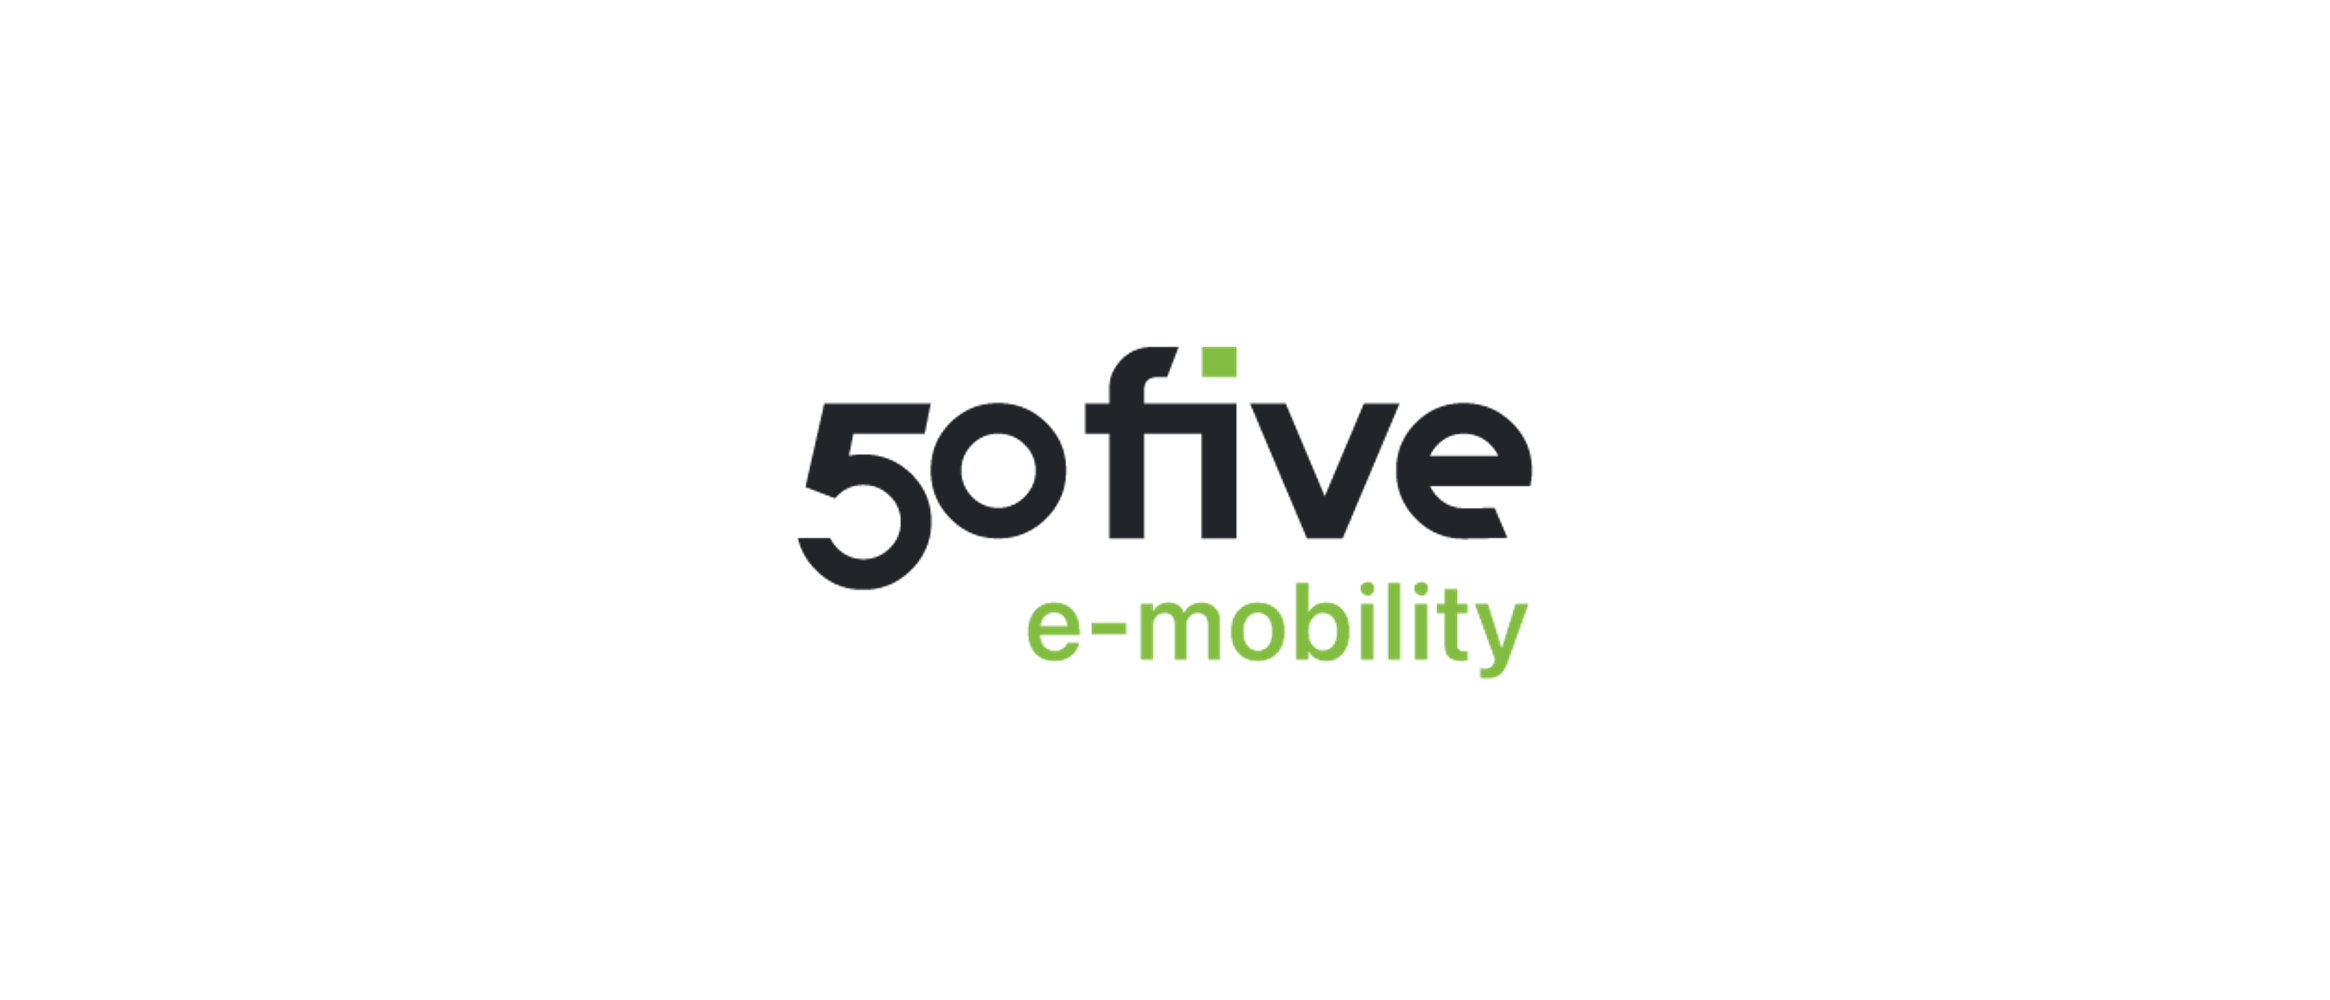 50five e-mobility